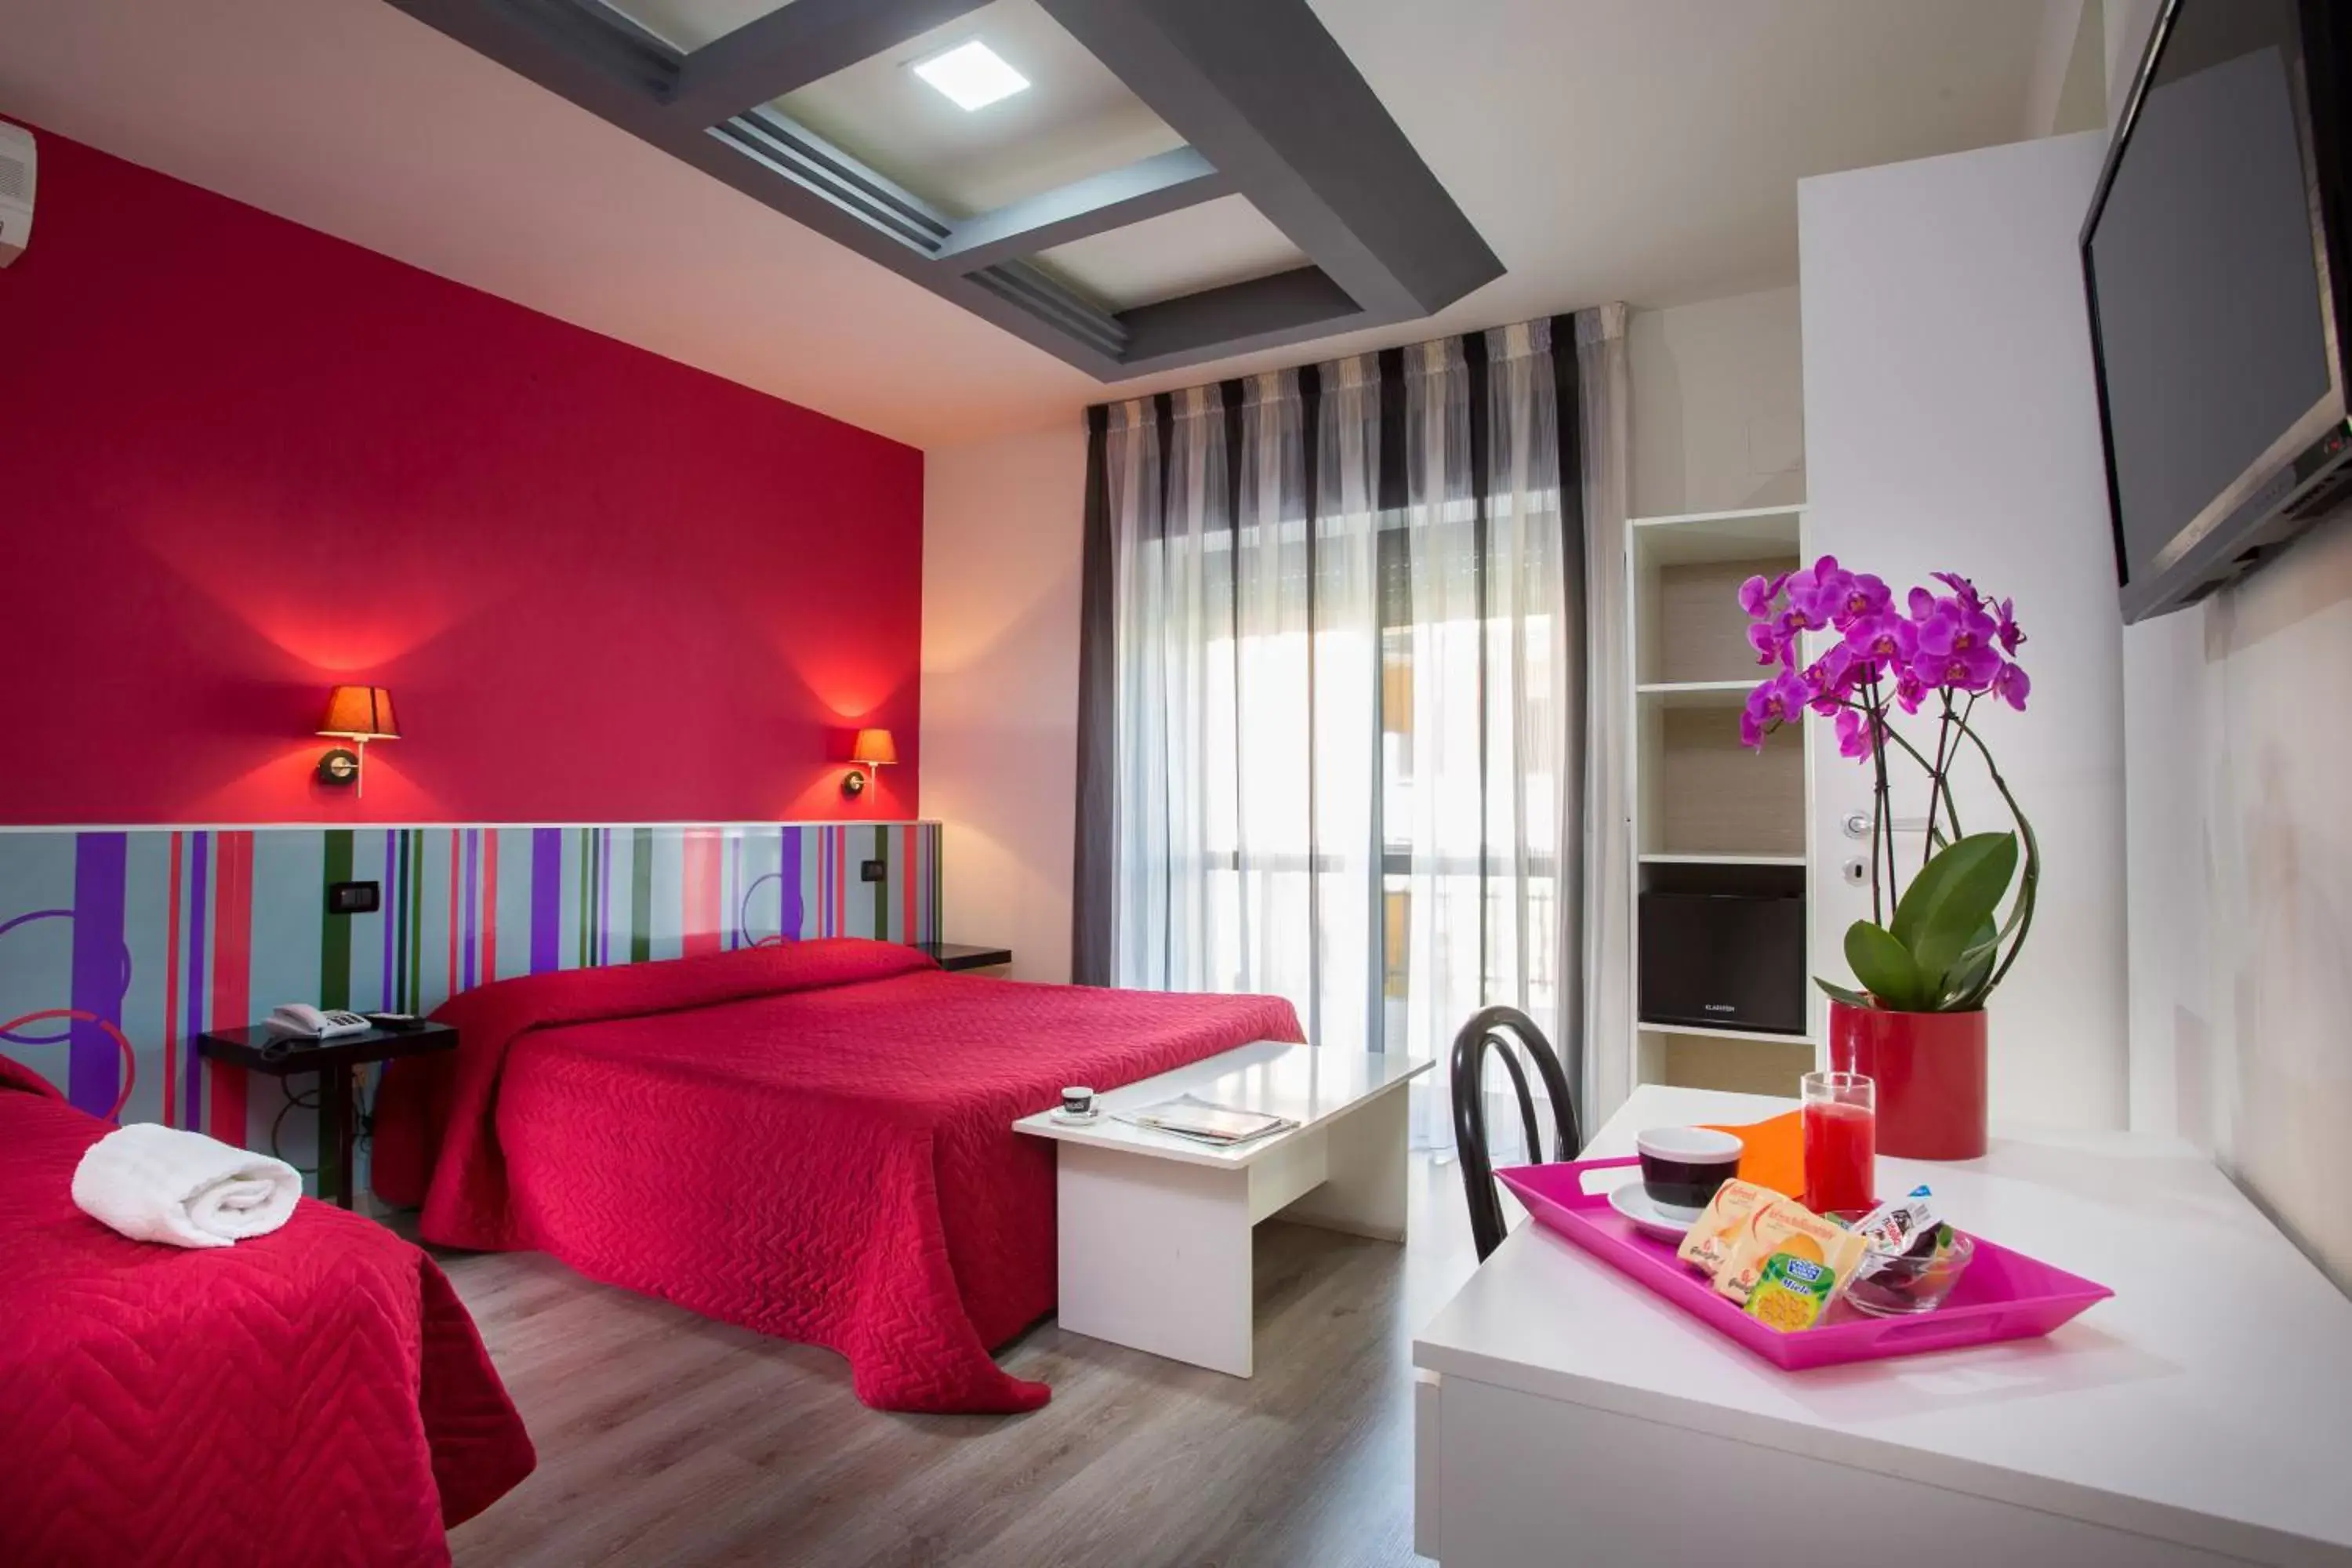 Bed in Le Ceramiche - Hotel Residence ed Eventi